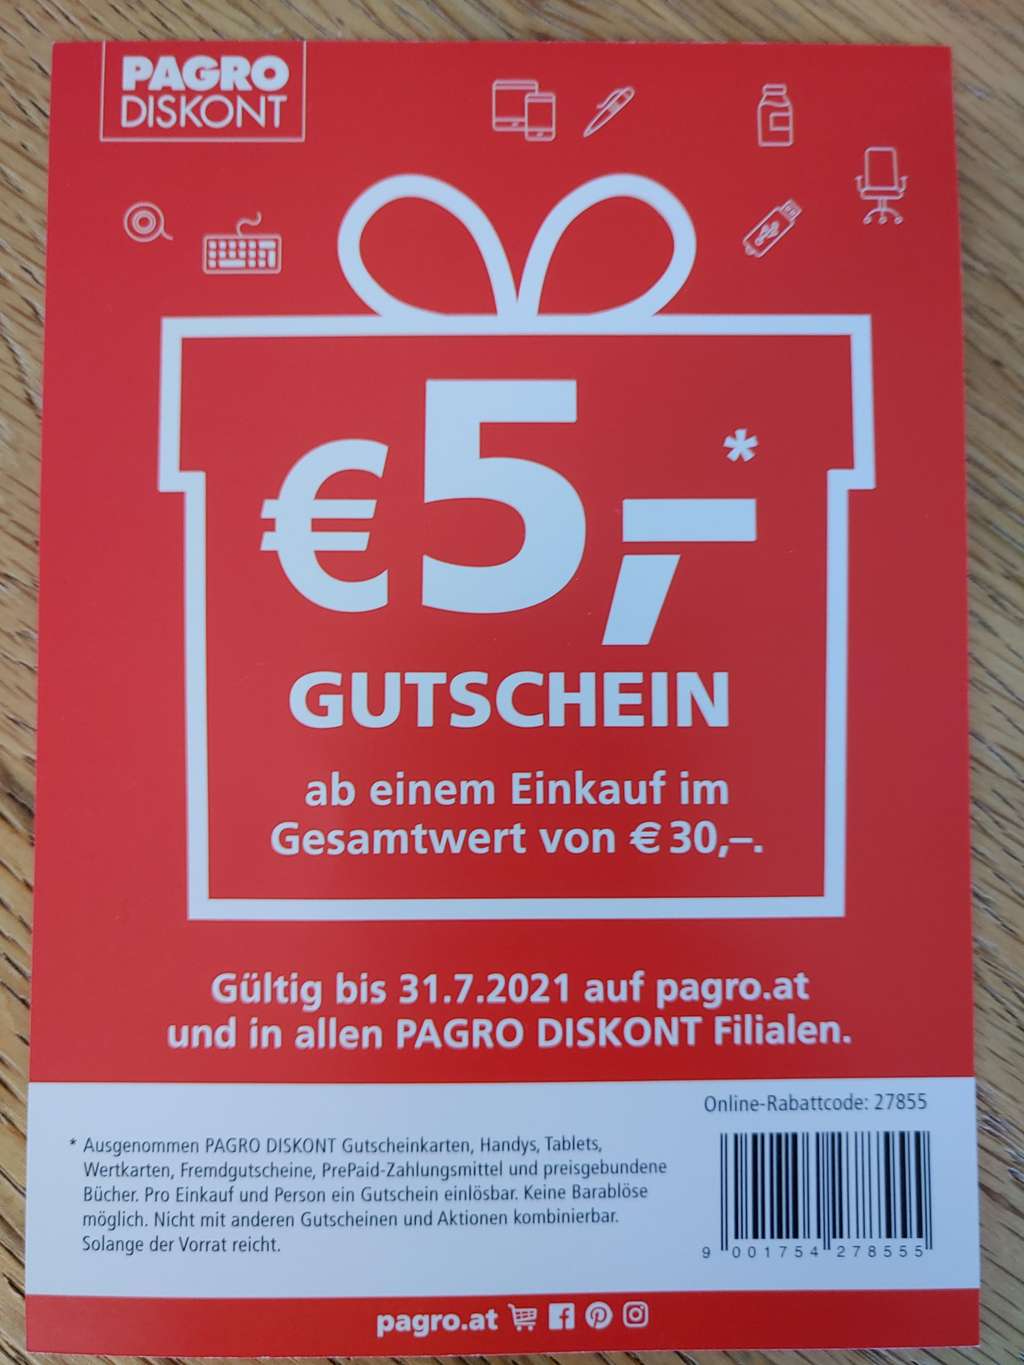 Pagro 5€ Gutschein ab Einkauf im Gesamtwert von 30€ - Preisjäger